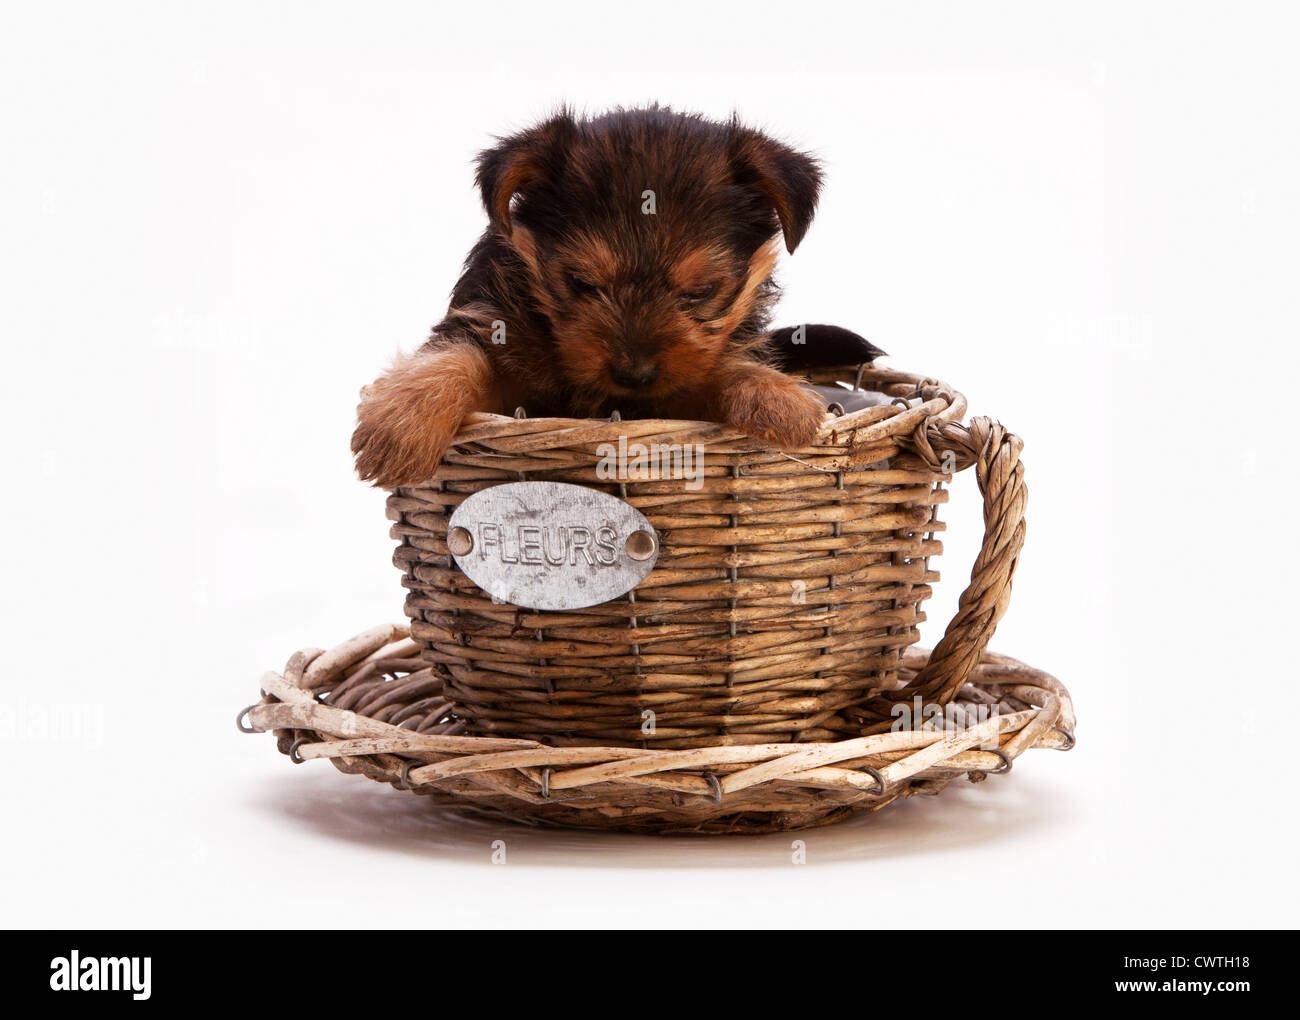 Tazza In Ceramica Cuccioli Cane - Terrier